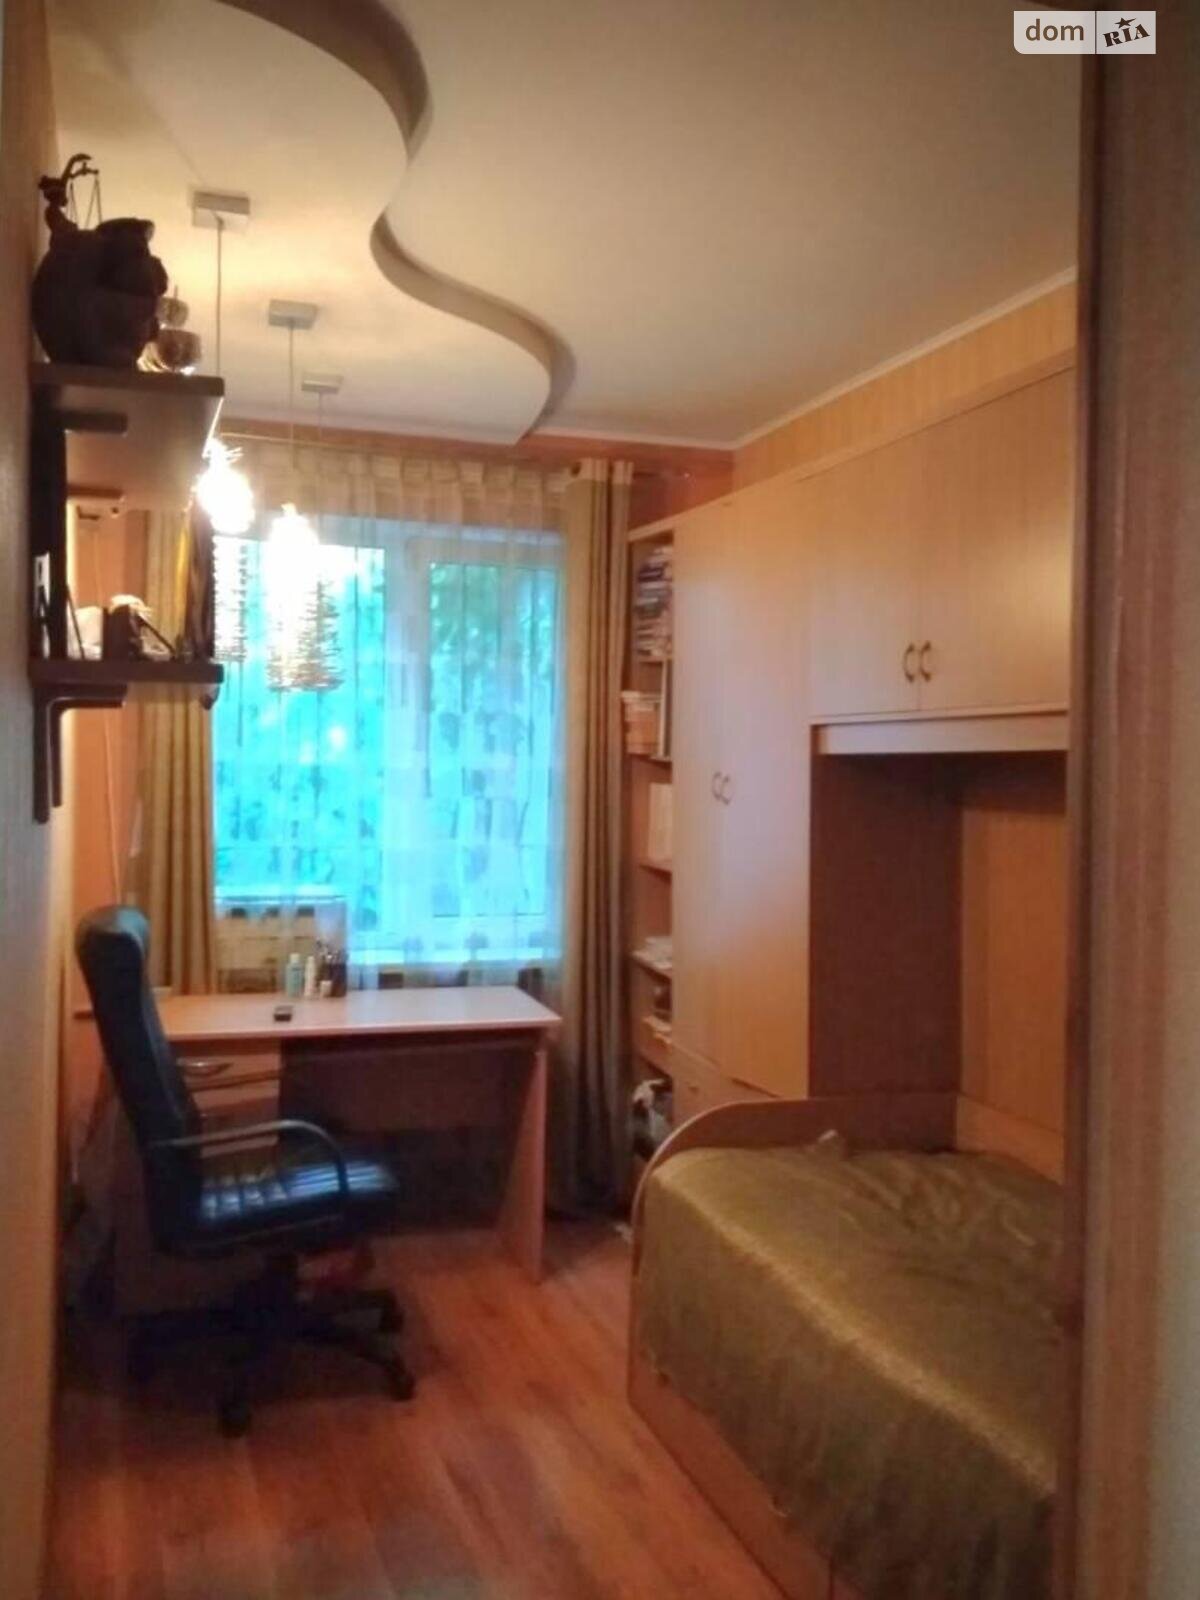 Продажа части дома в Одессе, улица Спартаковская, район Хаджибейский, 4 комнаты фото 1